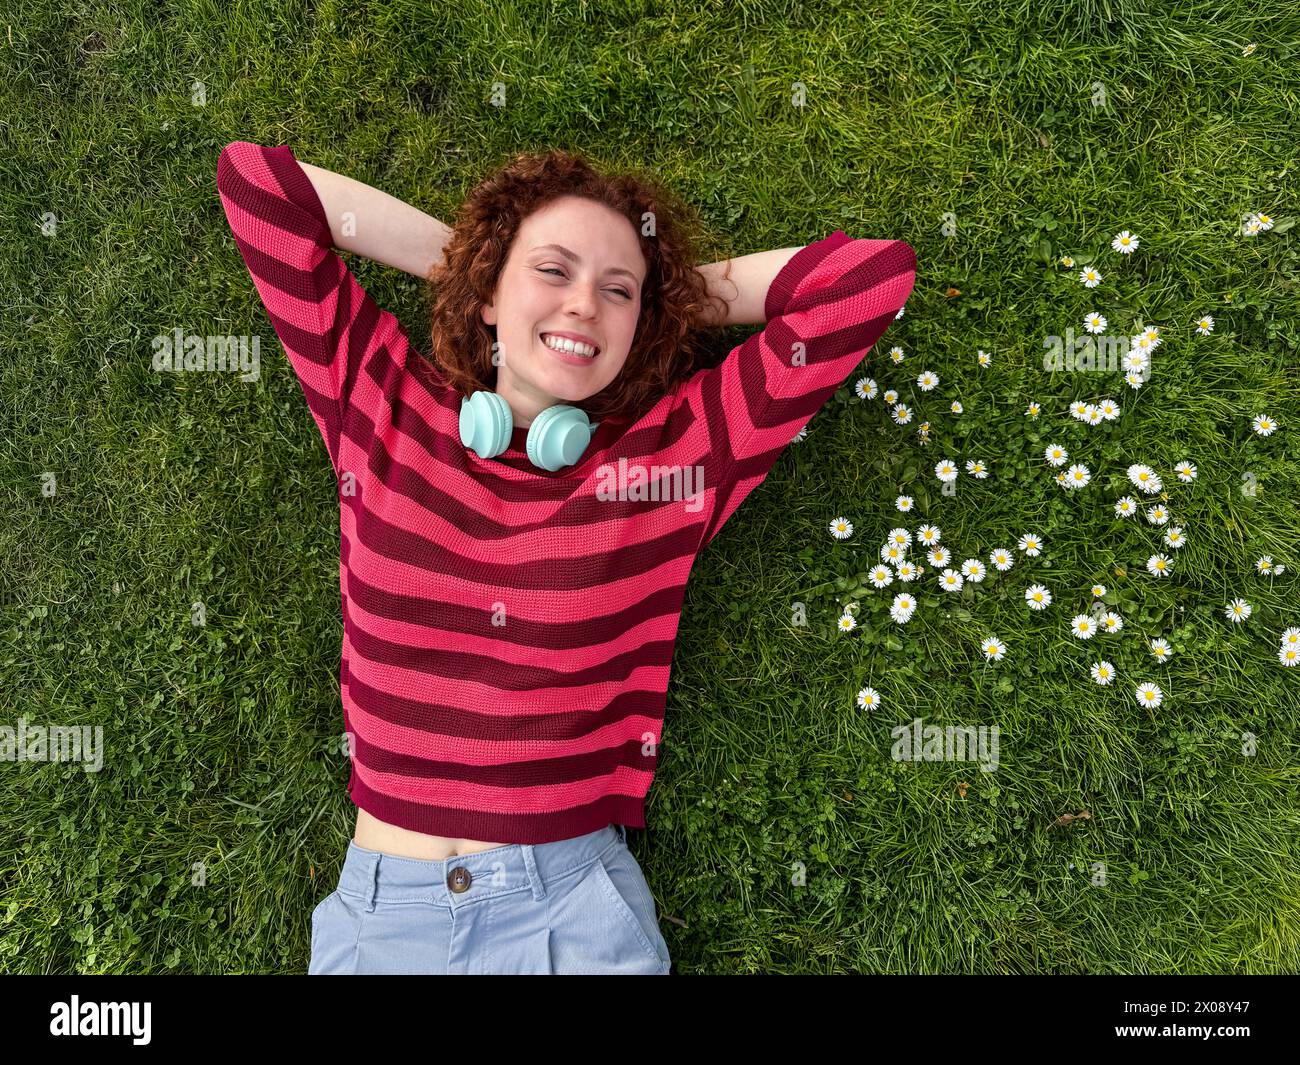 Una giovane donna rossa felice con i capelli rossi ricci giace su un lussureggiante prato verde, circondato da margherite bianche, godendosi una piacevole giornata Foto Stock